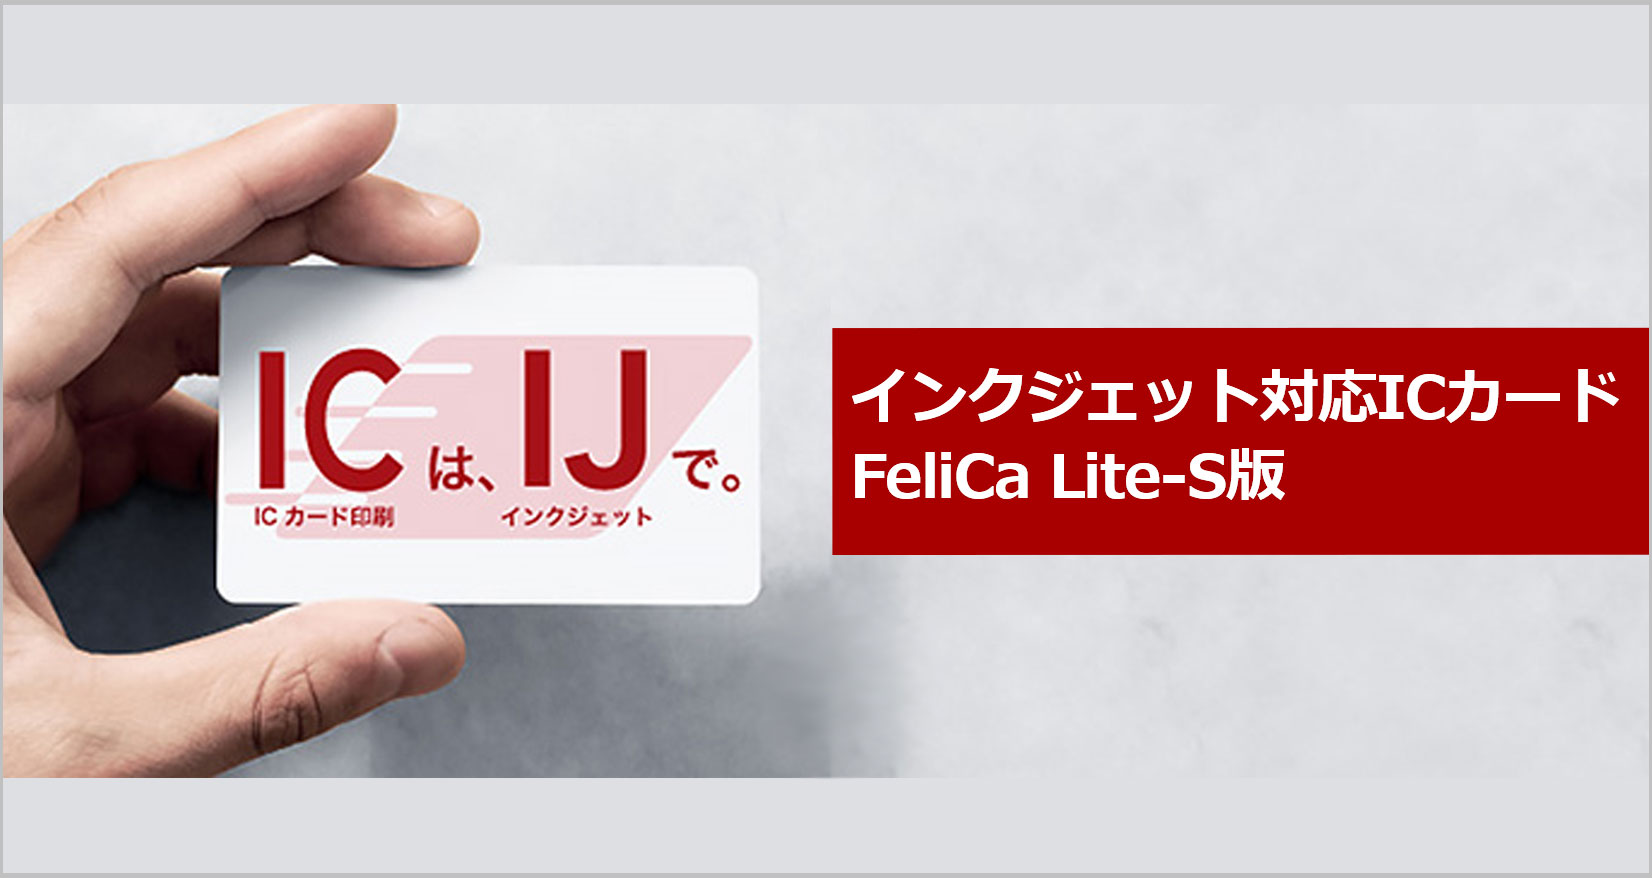 インクジェット対応ICカード FeliCa Lite-S版